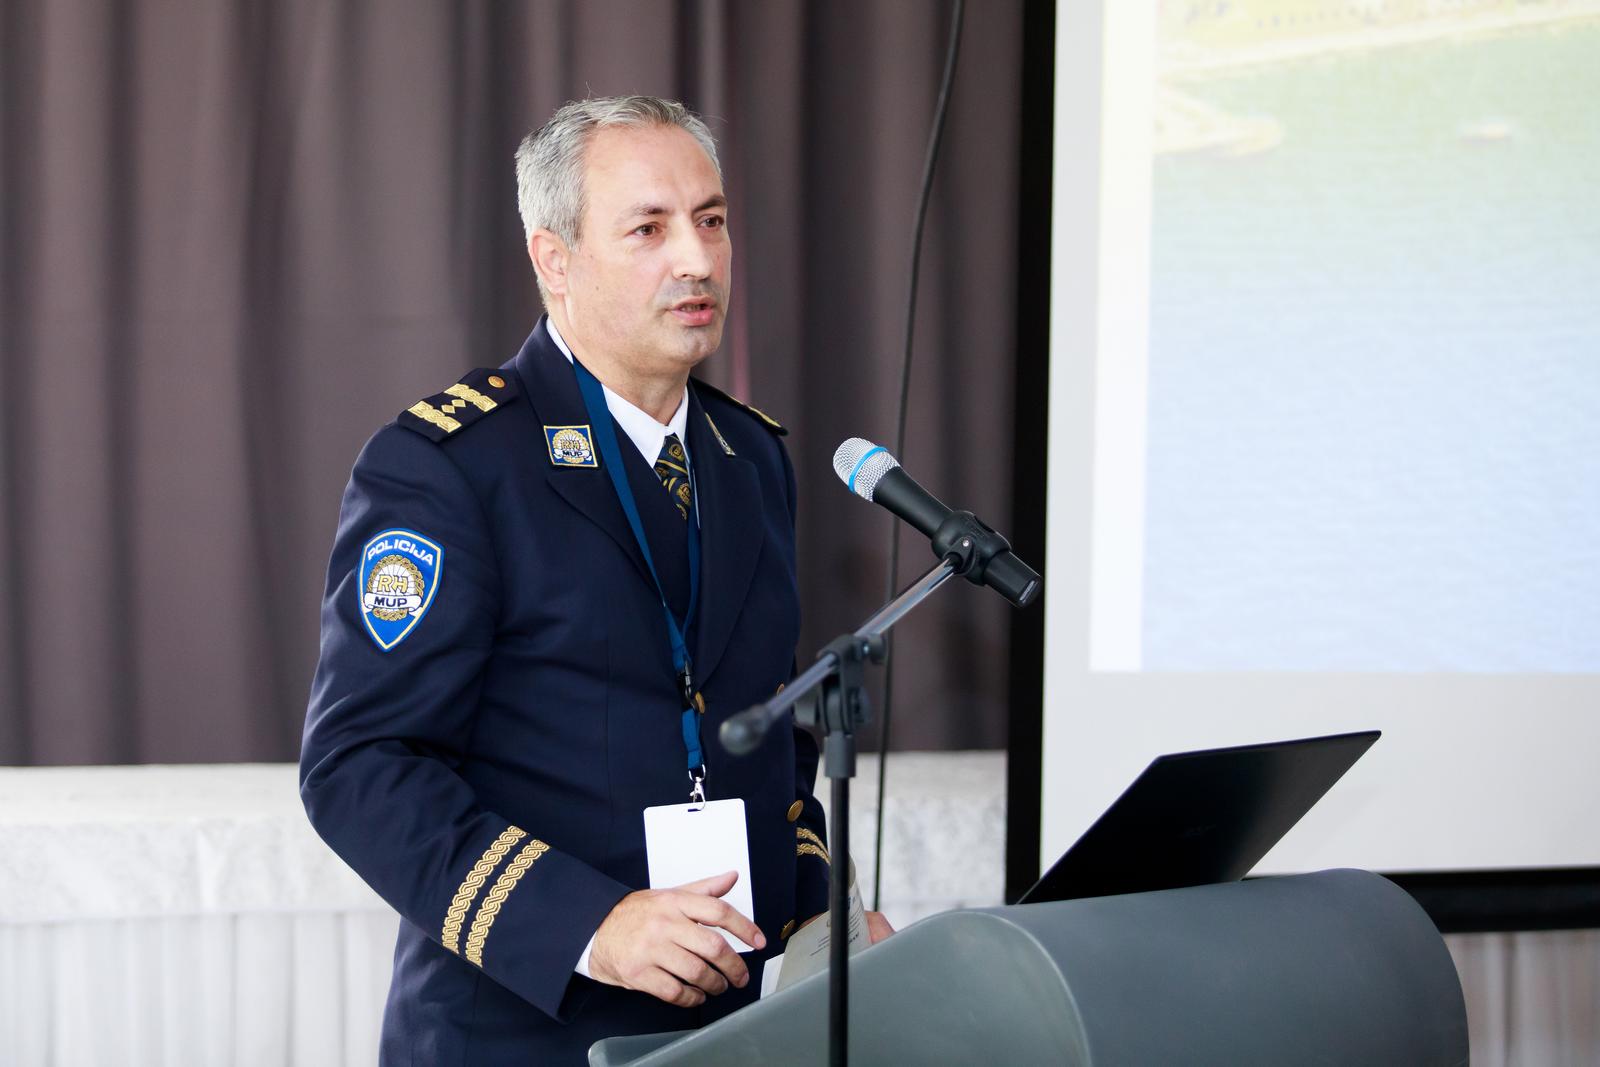 07.11.2019., Solin - Medjunarodna konferencija Sigurnost povijesnih gradova.rrSlobodan MarendicrrPhoto: Milan Sabic/PIXSELL